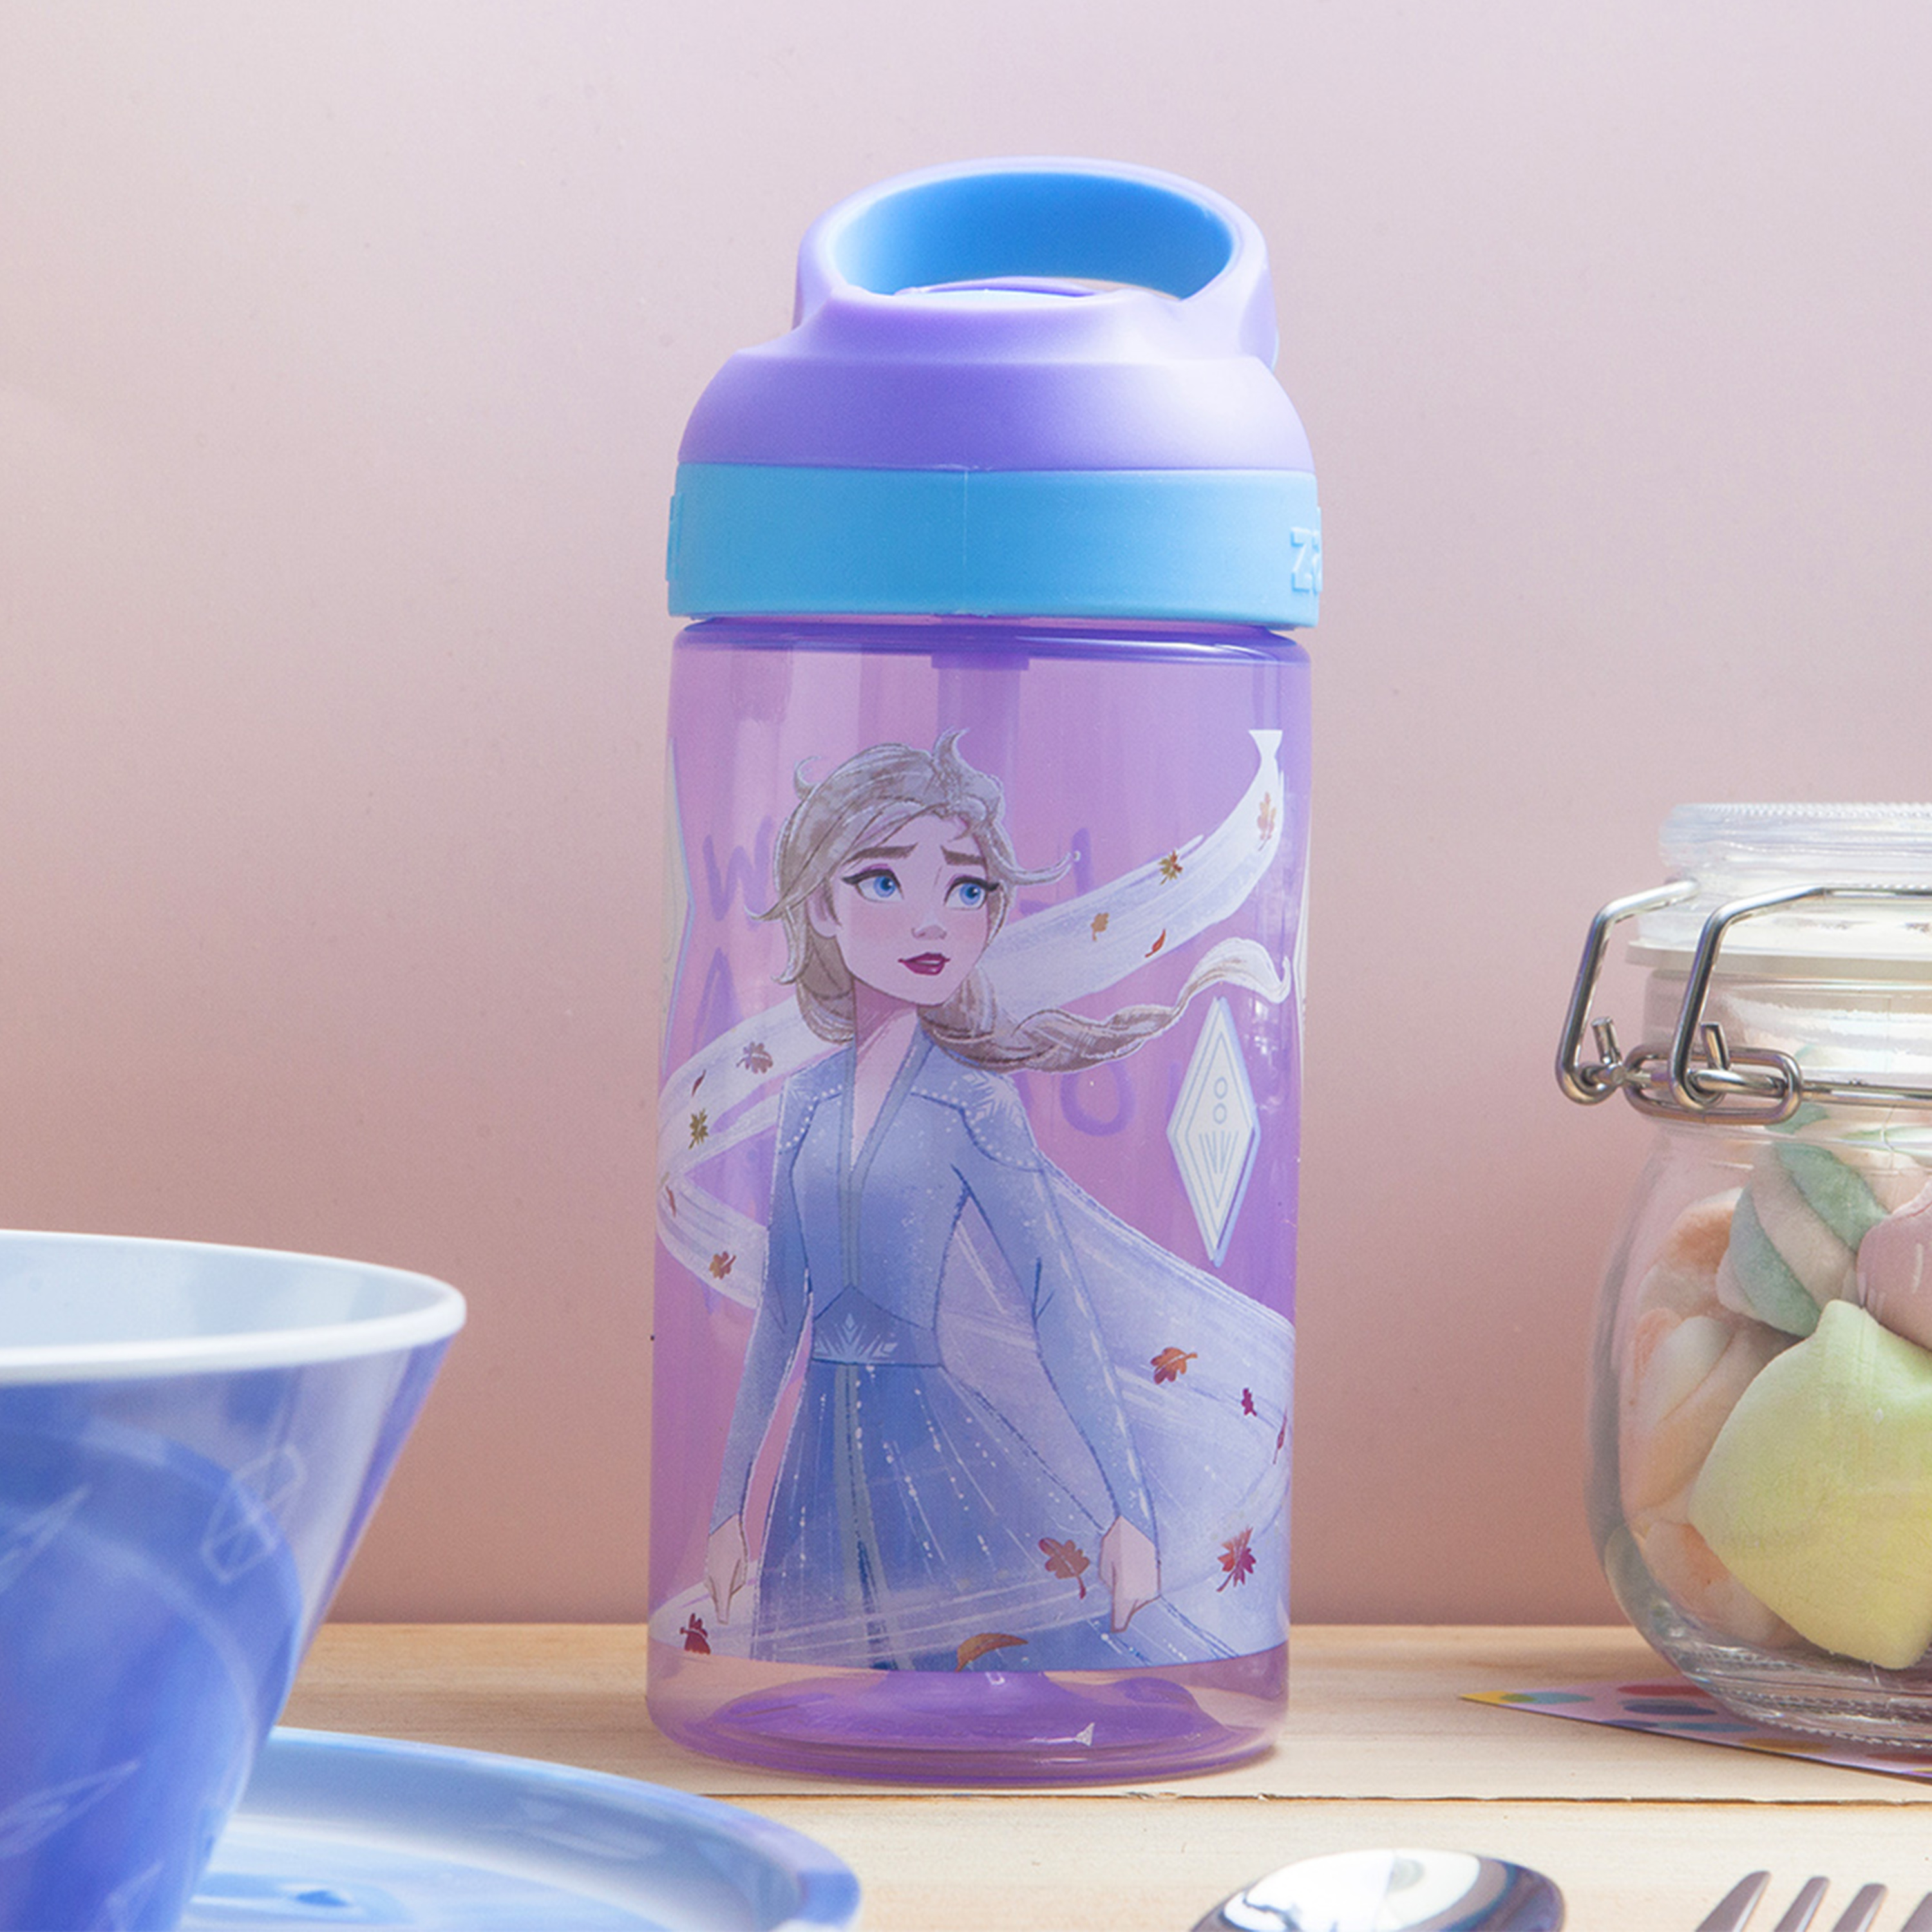 Disney Frozen 2 Movie Dinnerware Set, Anna and Elsa, 5-piece set slideshow image 2